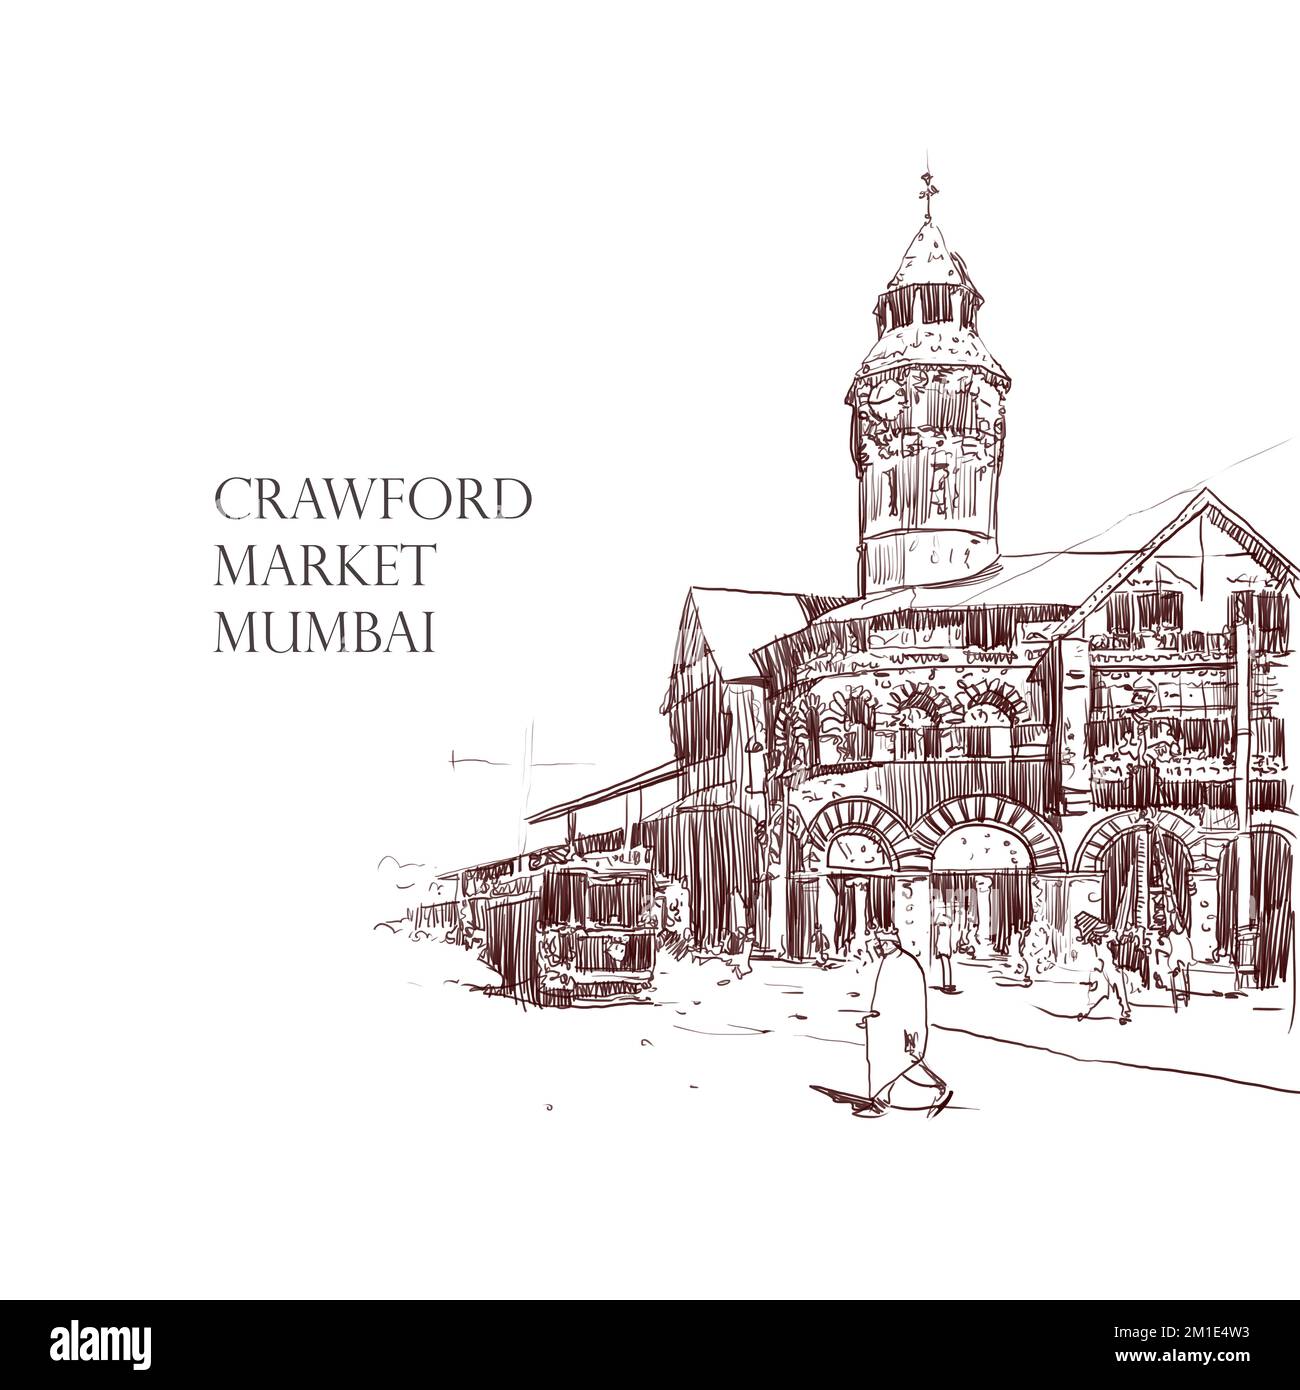 L'un des marchés les plus anciens et les plus populaires de Mumbai - marché Crawford également connu sous le nom de Mahatma Jyotiba Phule Mandai illustration, bâtiments et architectes Banque D'Images